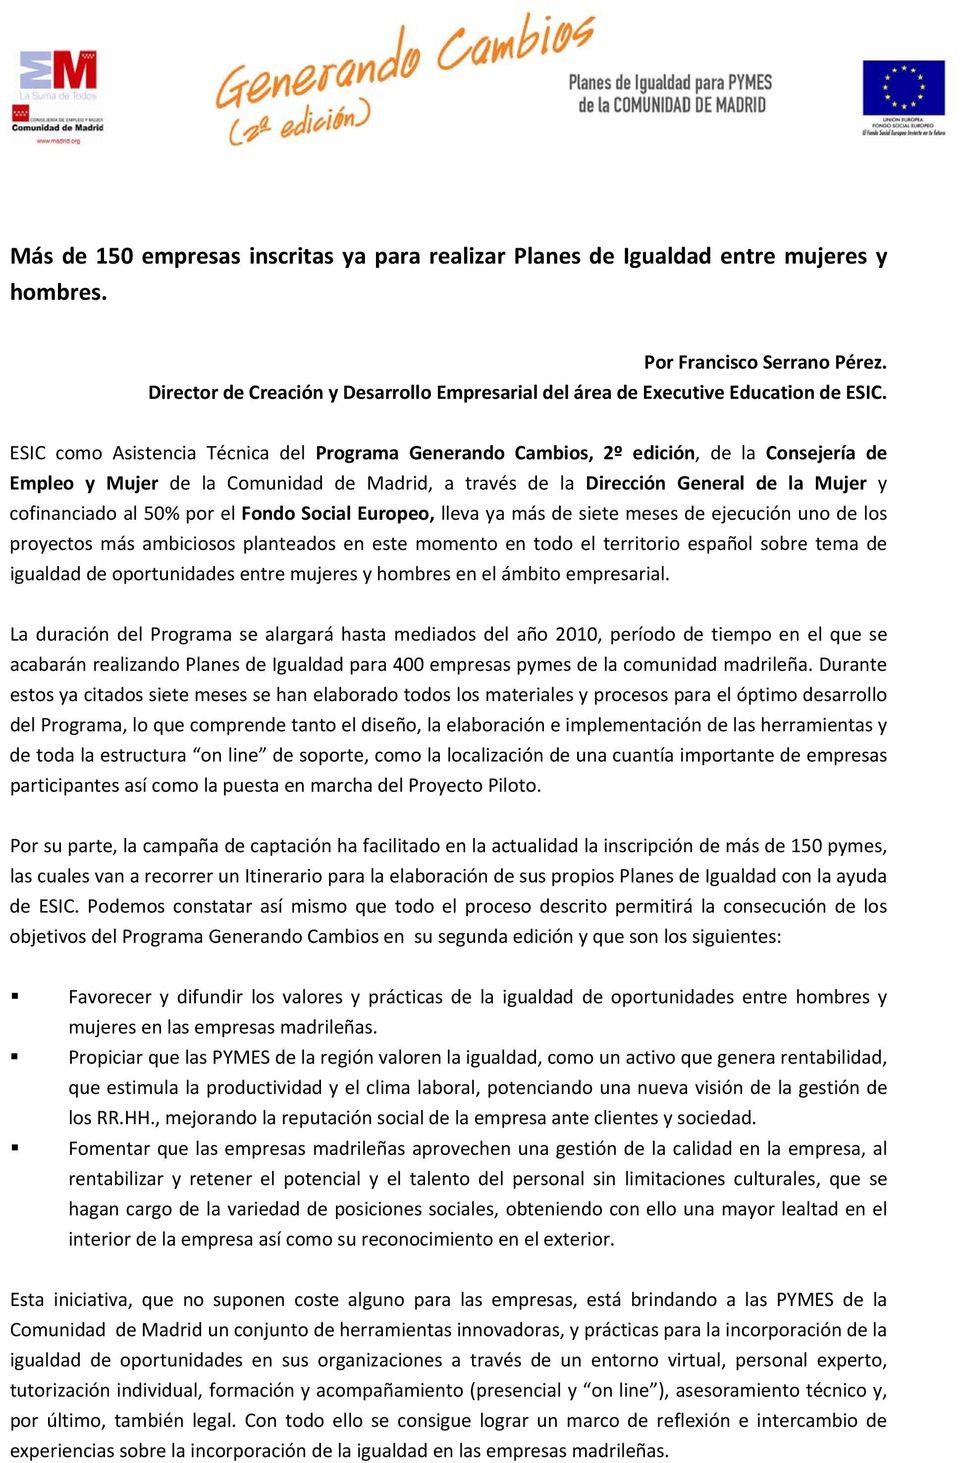 ESIC como Asistencia Técnica del Programa Generando Cambios, 2º edición, de la Consejería de Empleo y Mujer de la Comunidad de Madrid, a través de la Dirección General de la Mujer y cofinanciado al